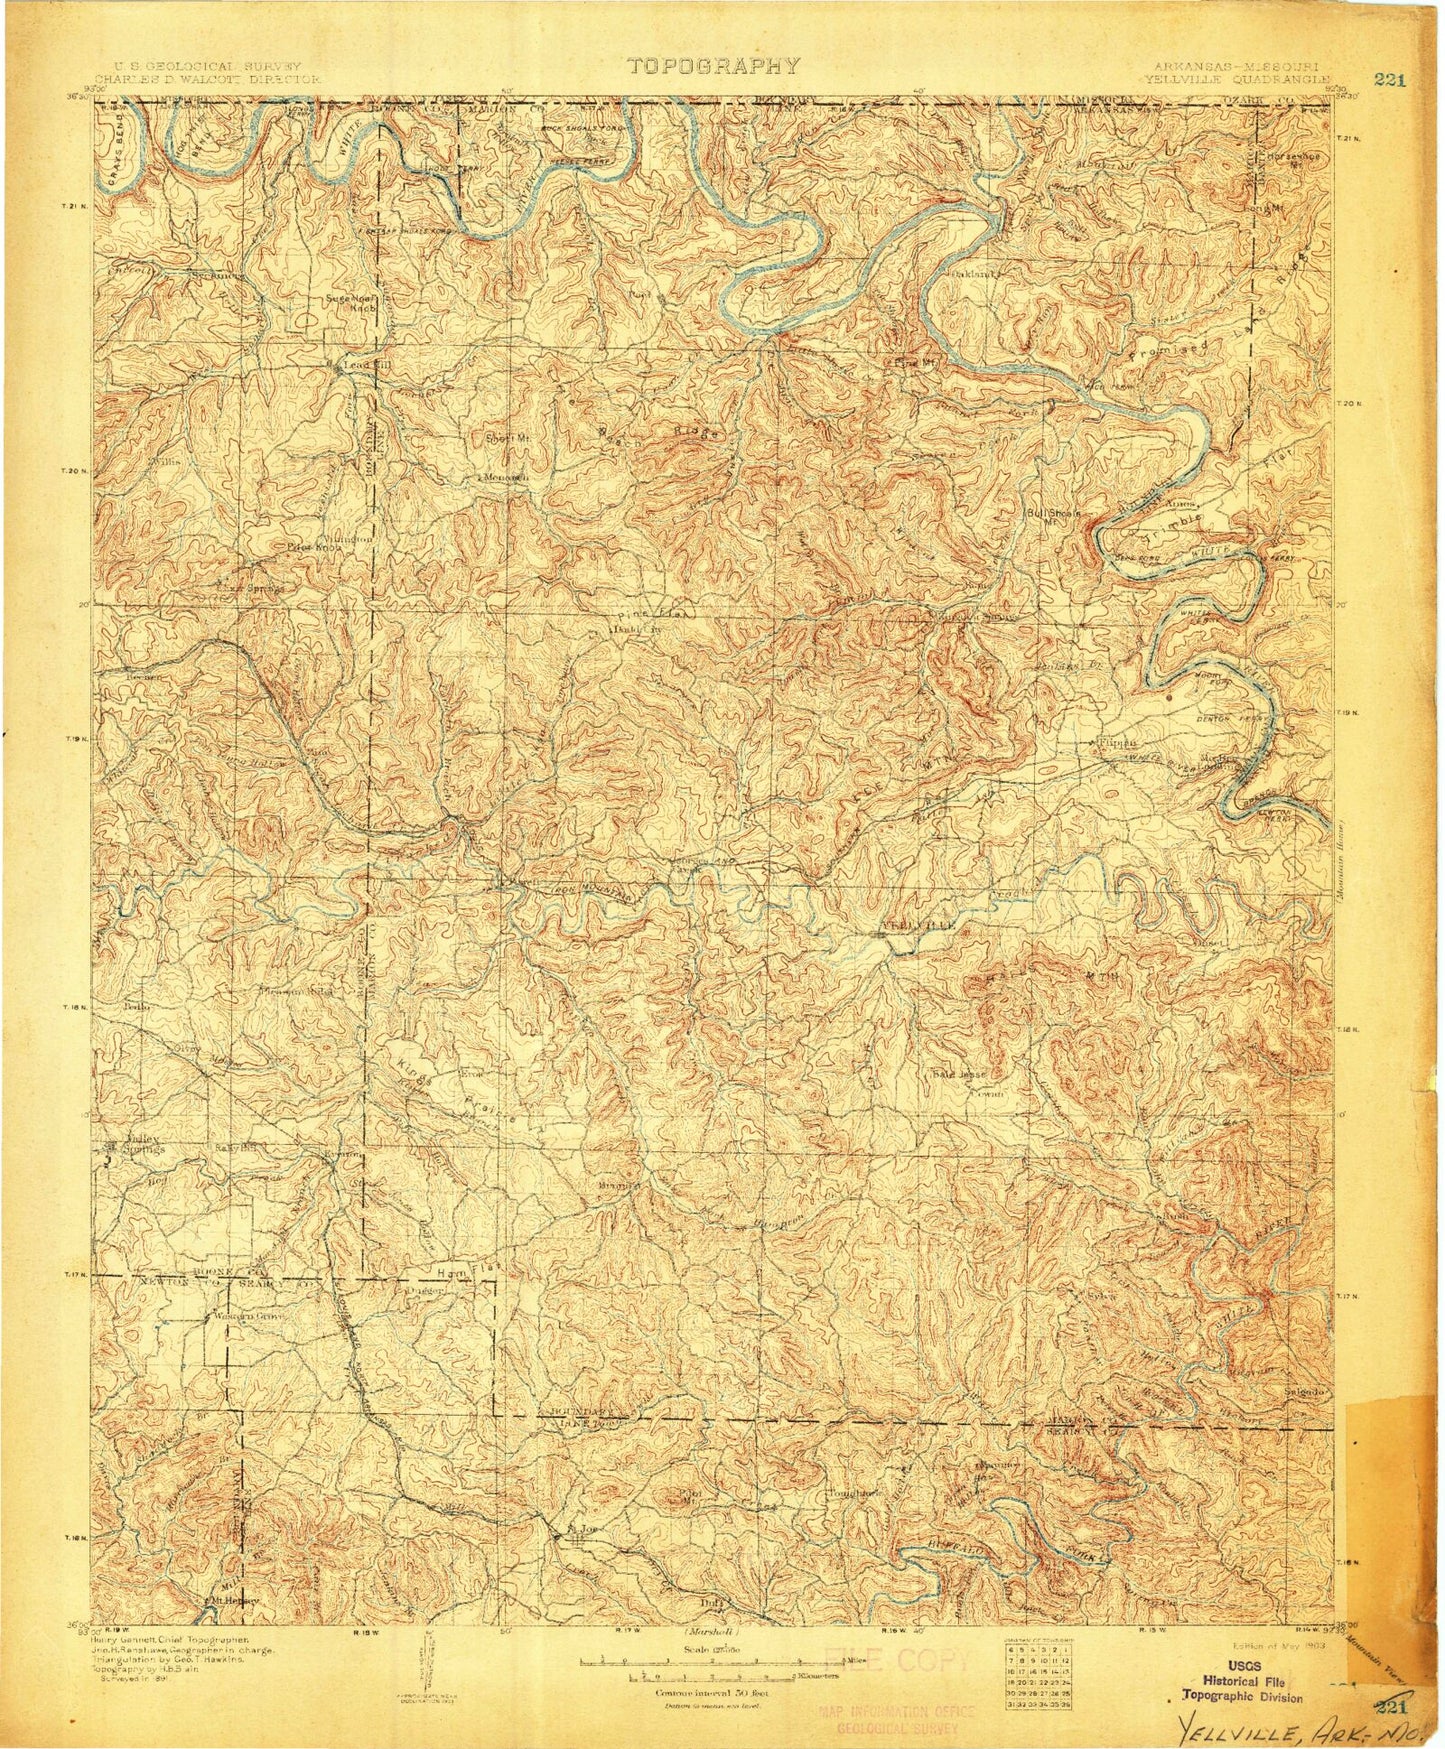 Historic 1903 Yellville Arkansas 30'x30' Topo Map Image